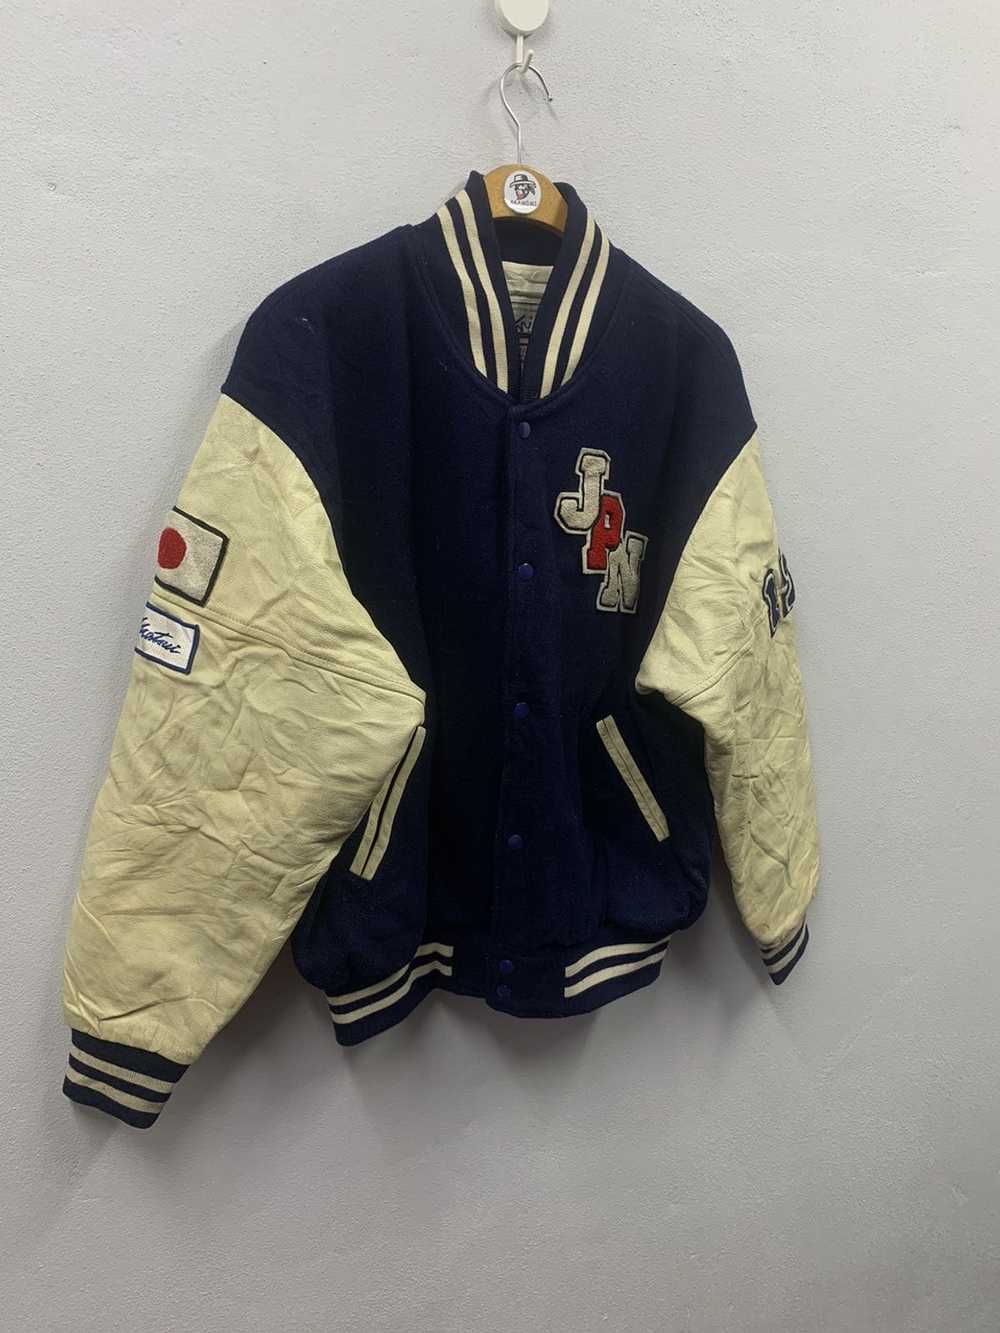 Hockey × Leather Jacket × Varsity Jacket Vintage … - image 2